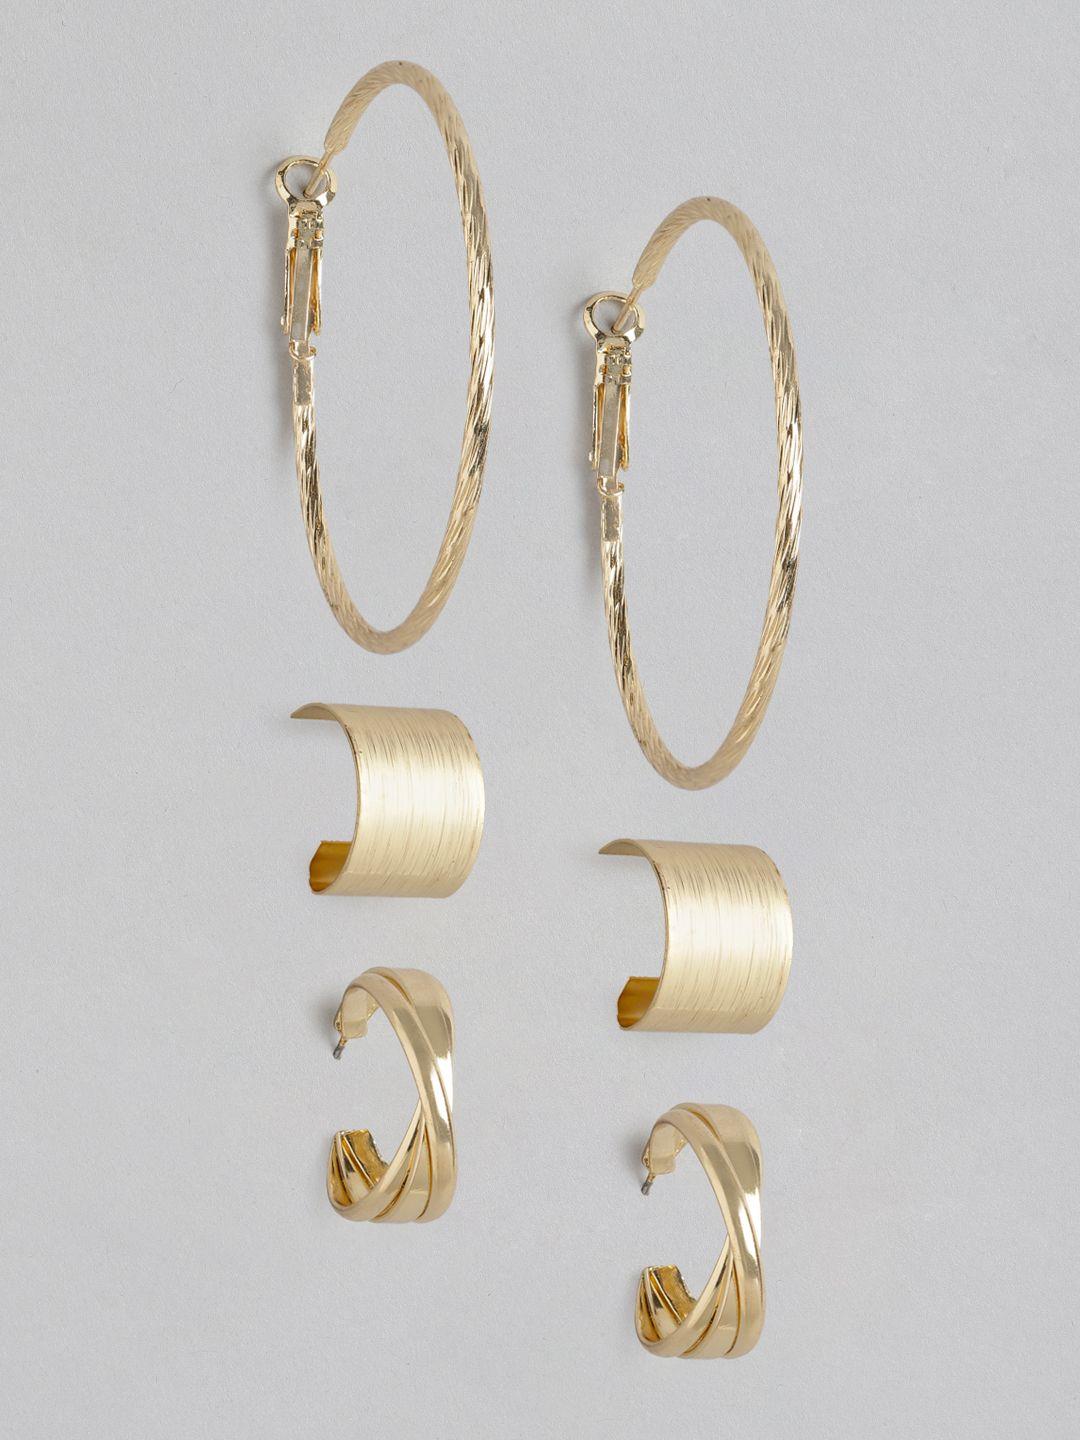 carlton-london-pack-of-3-gold-plated-circular-hoop-earrings